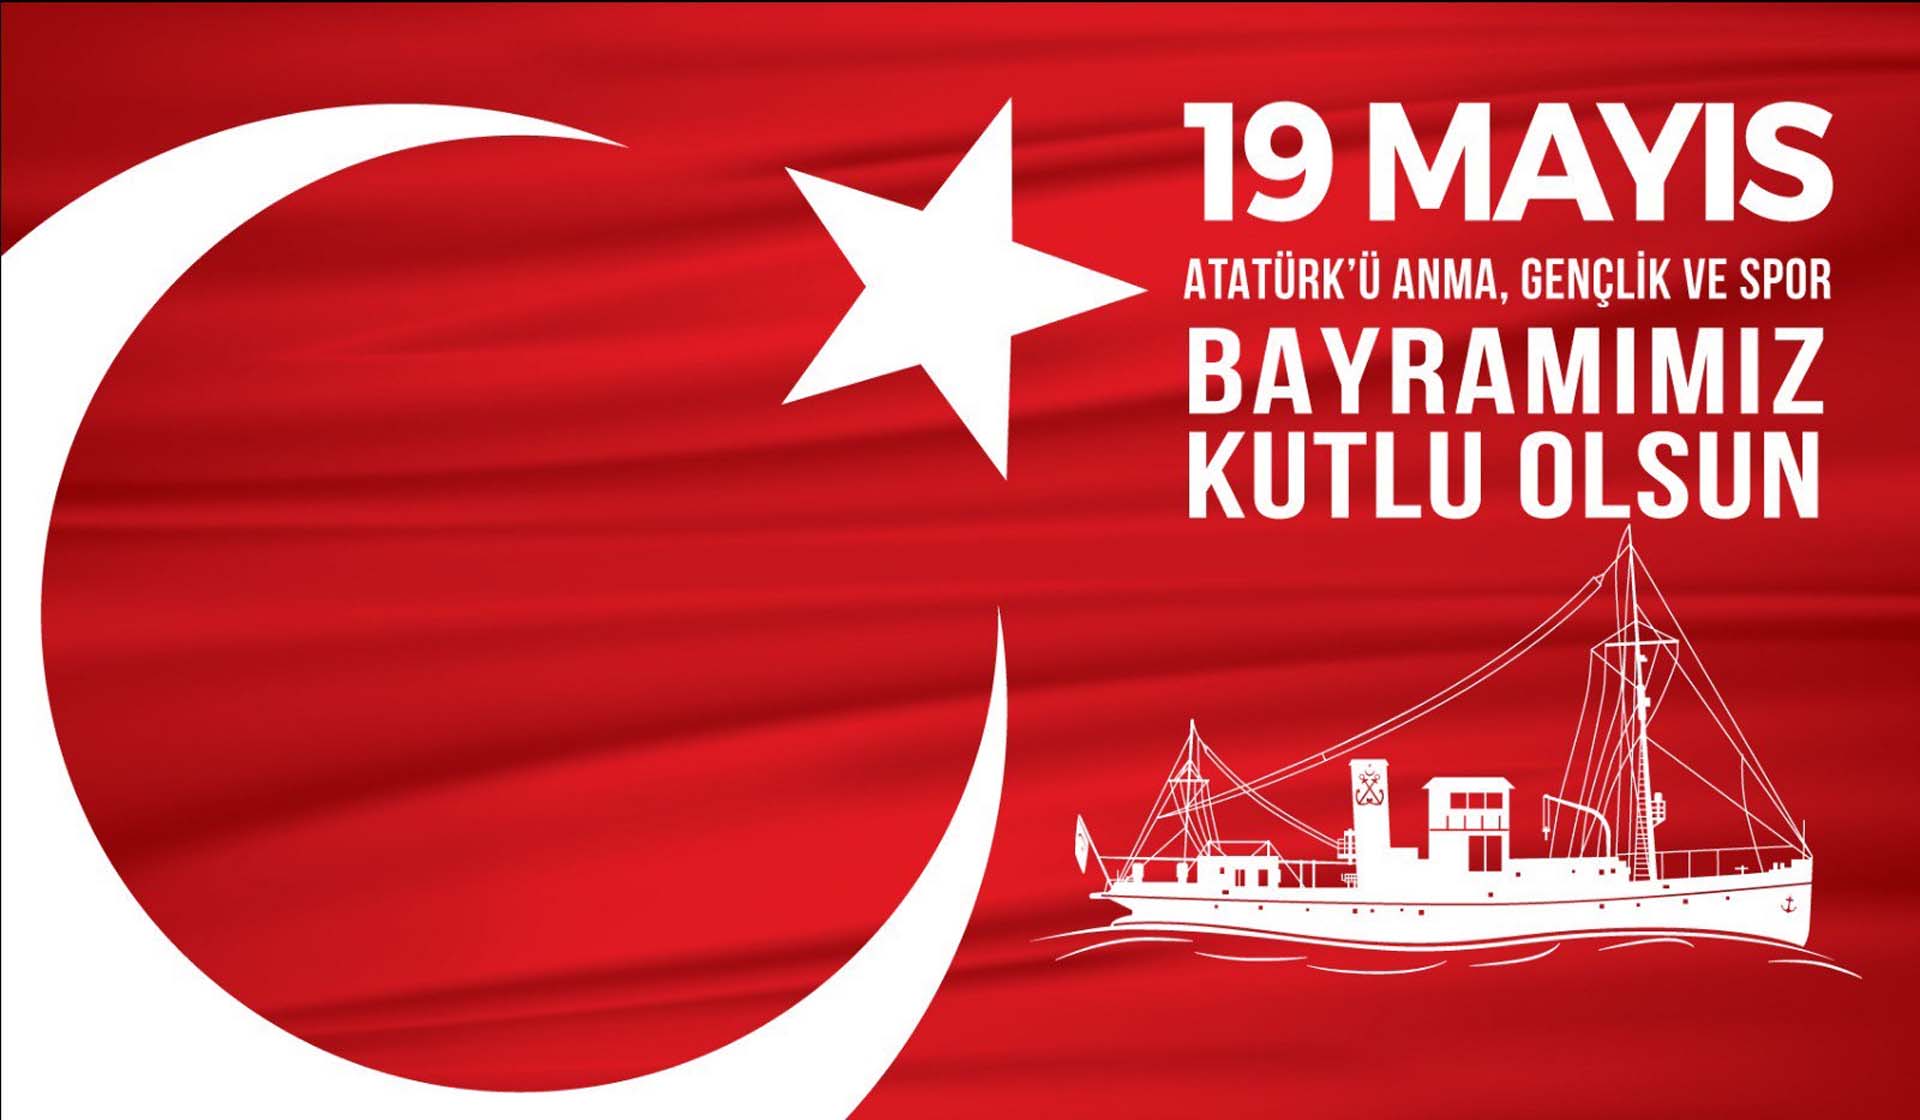 19 Mayıs Atatürk'ü Anma Gençlik ve Spor Bayramı resmi tatil mi 2022? 19 Mayıs hangi güne denk geliyor, yarım gün mü, tam gün mü? 